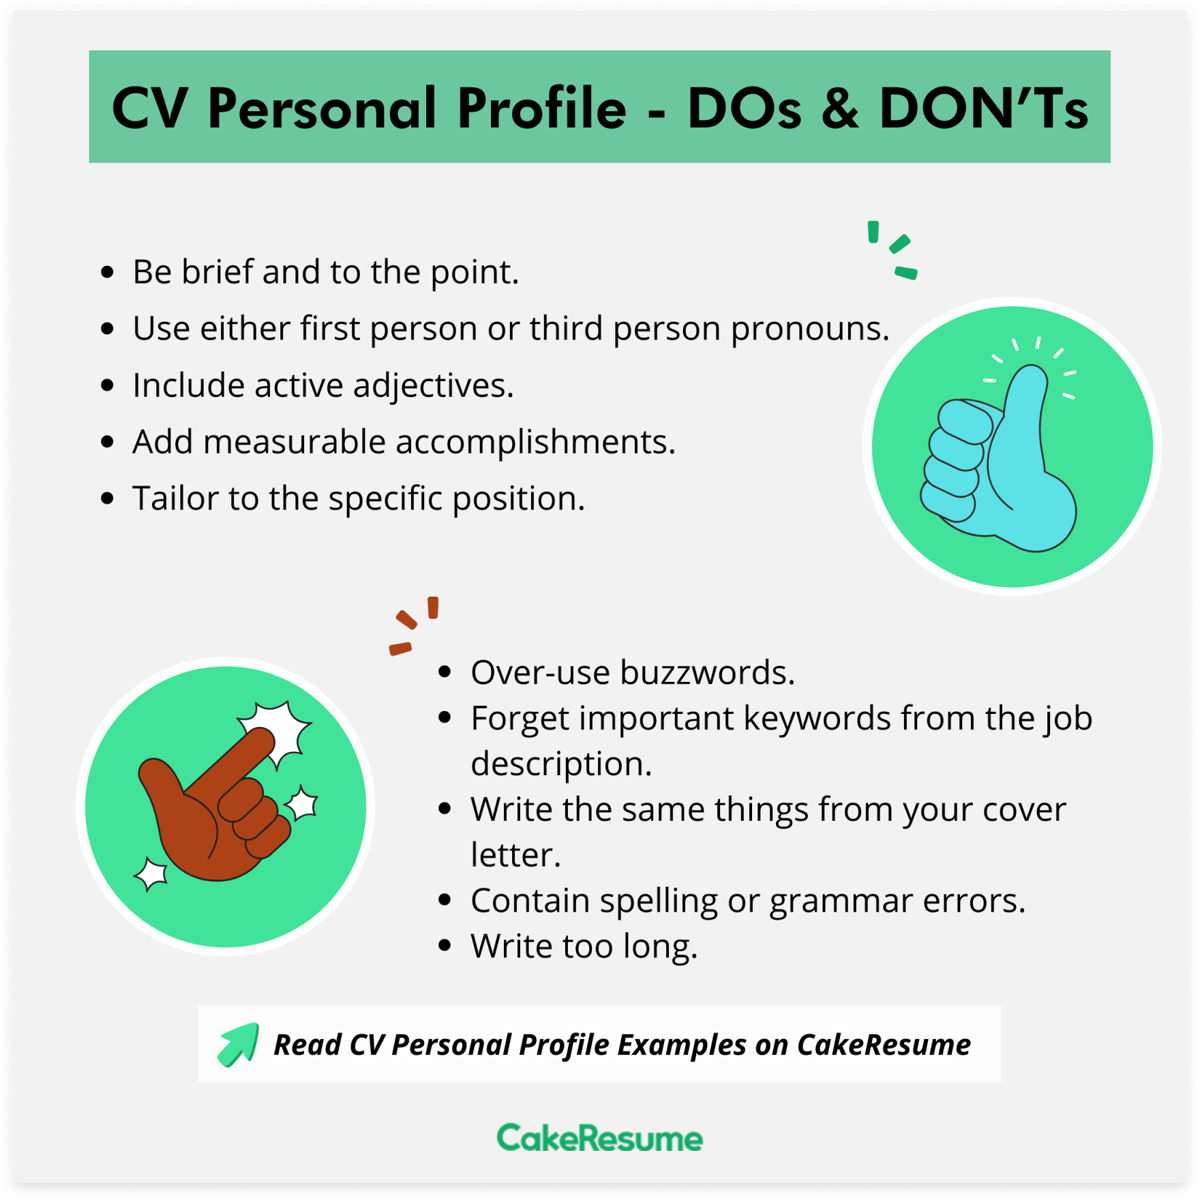 CV Personal Profile